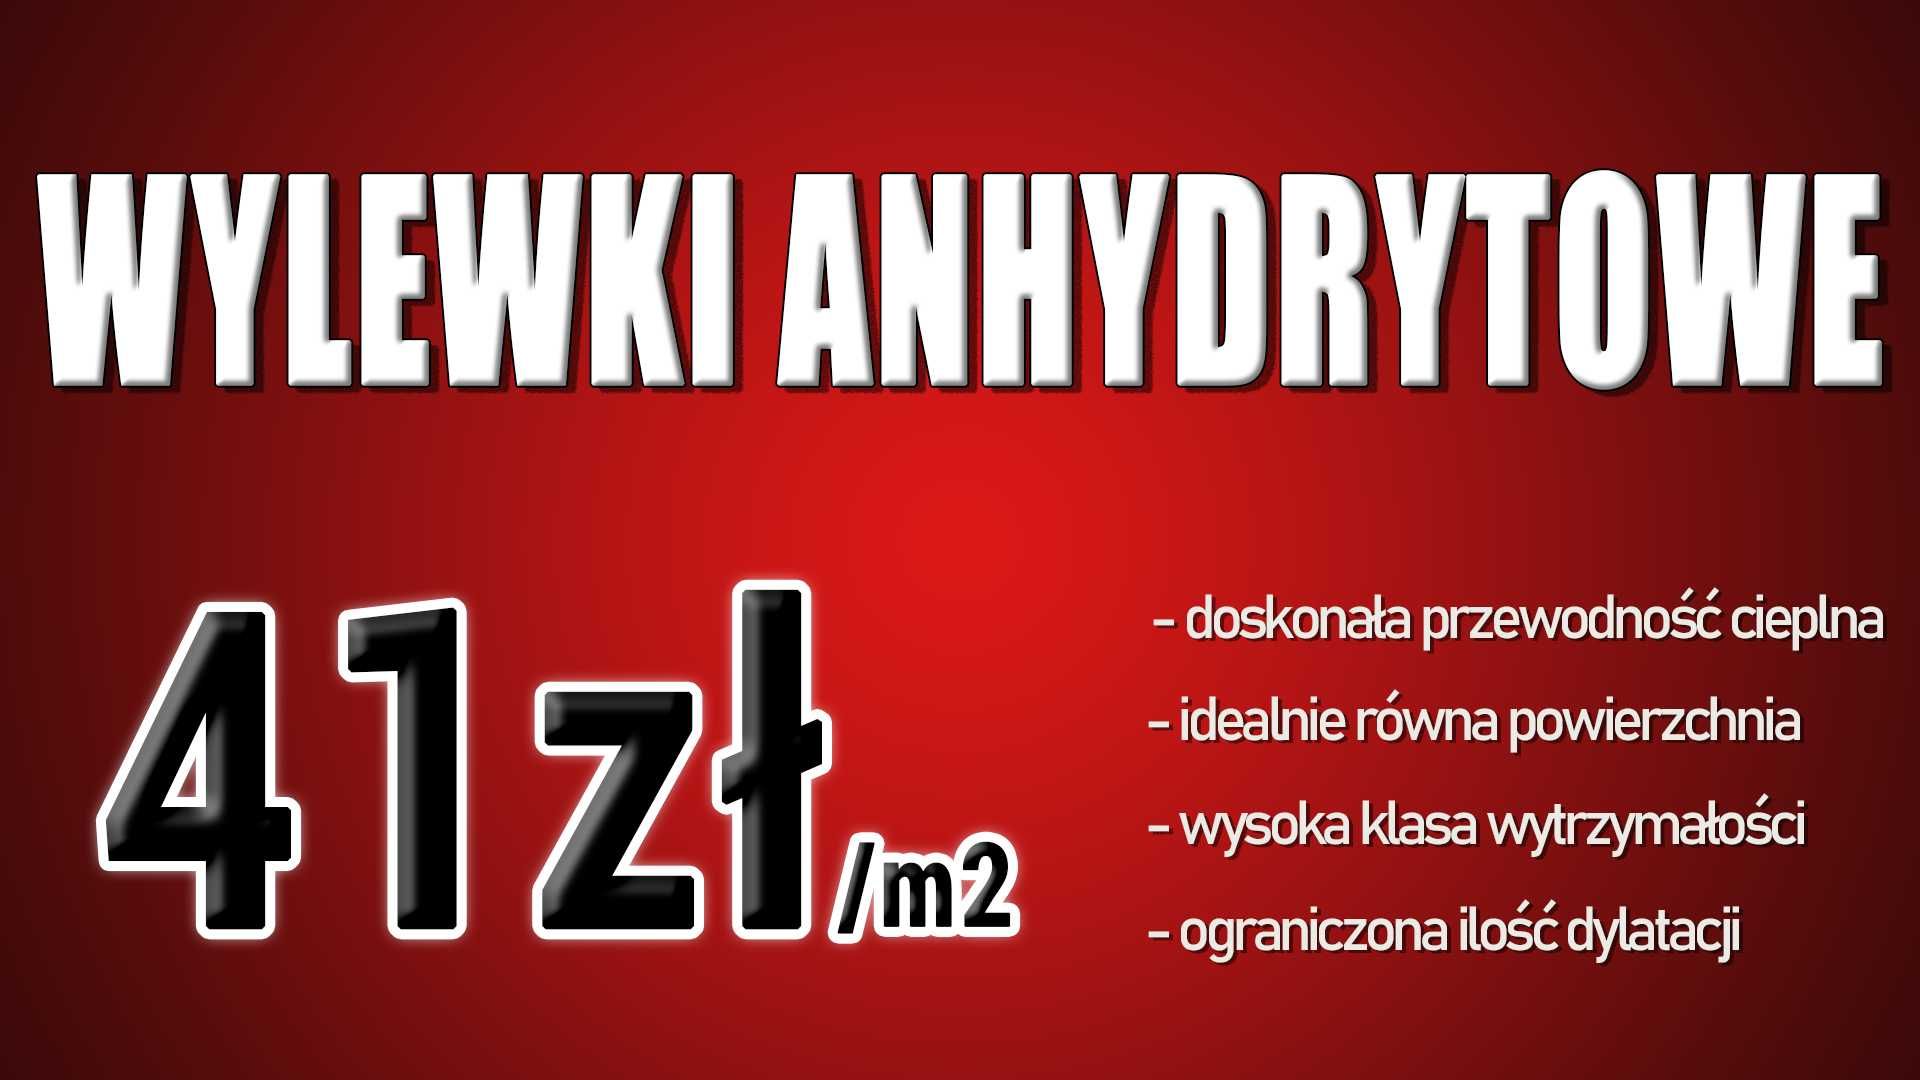 Wylewka anhydrytowa Tarnowskie Góry - Śląsk